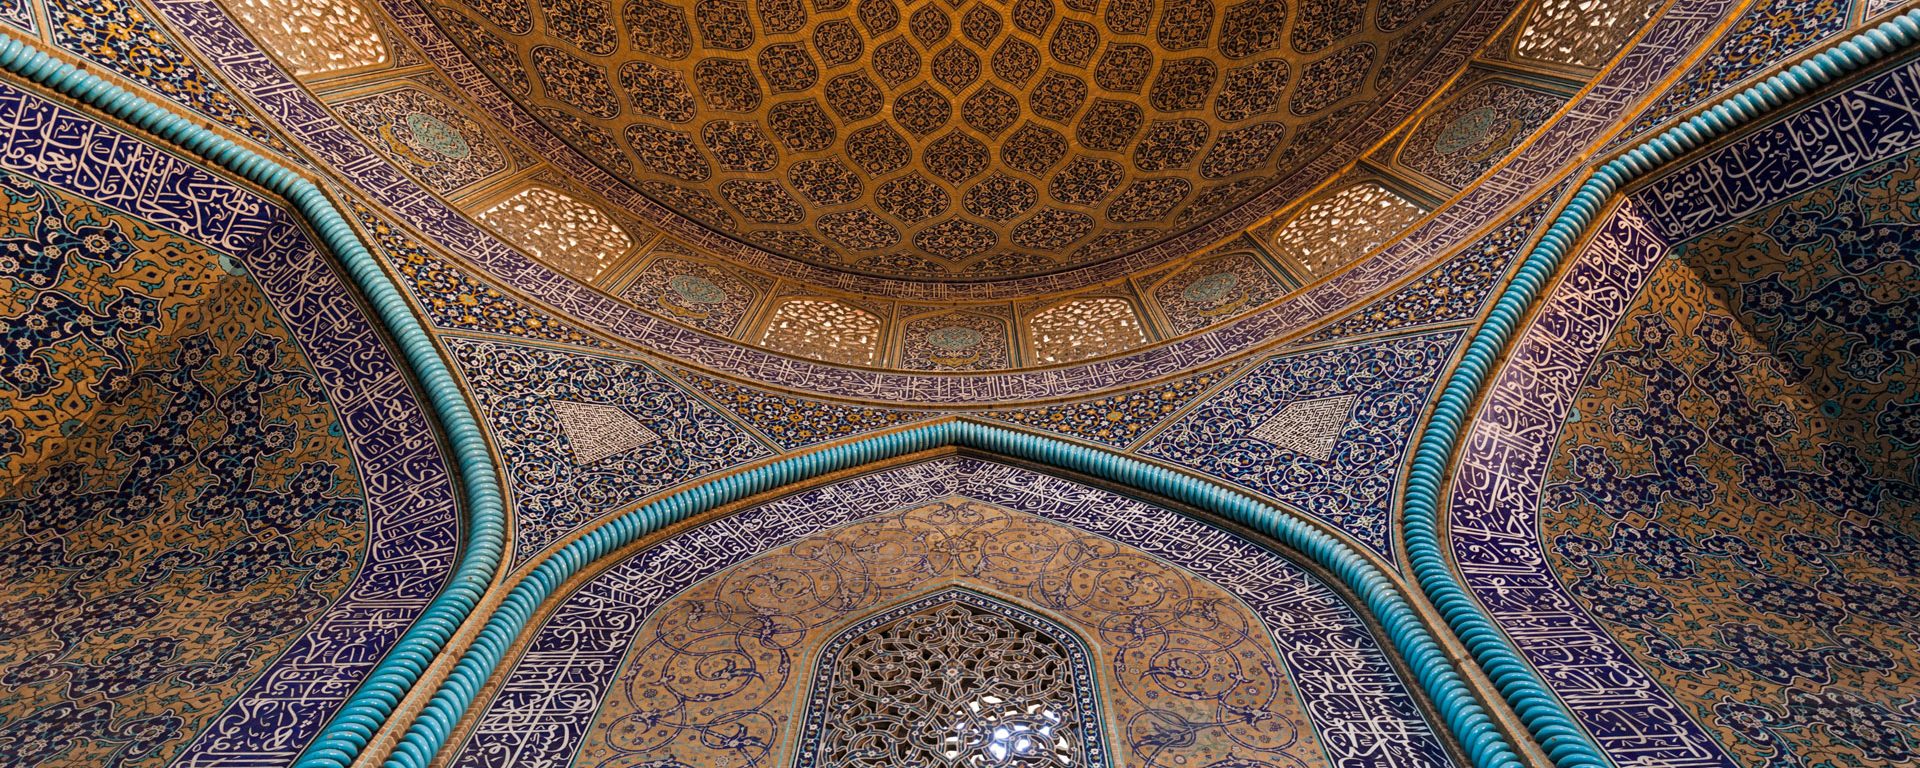 Central Iran, Esfahan, Mosque Of Sheikh Lotfollah